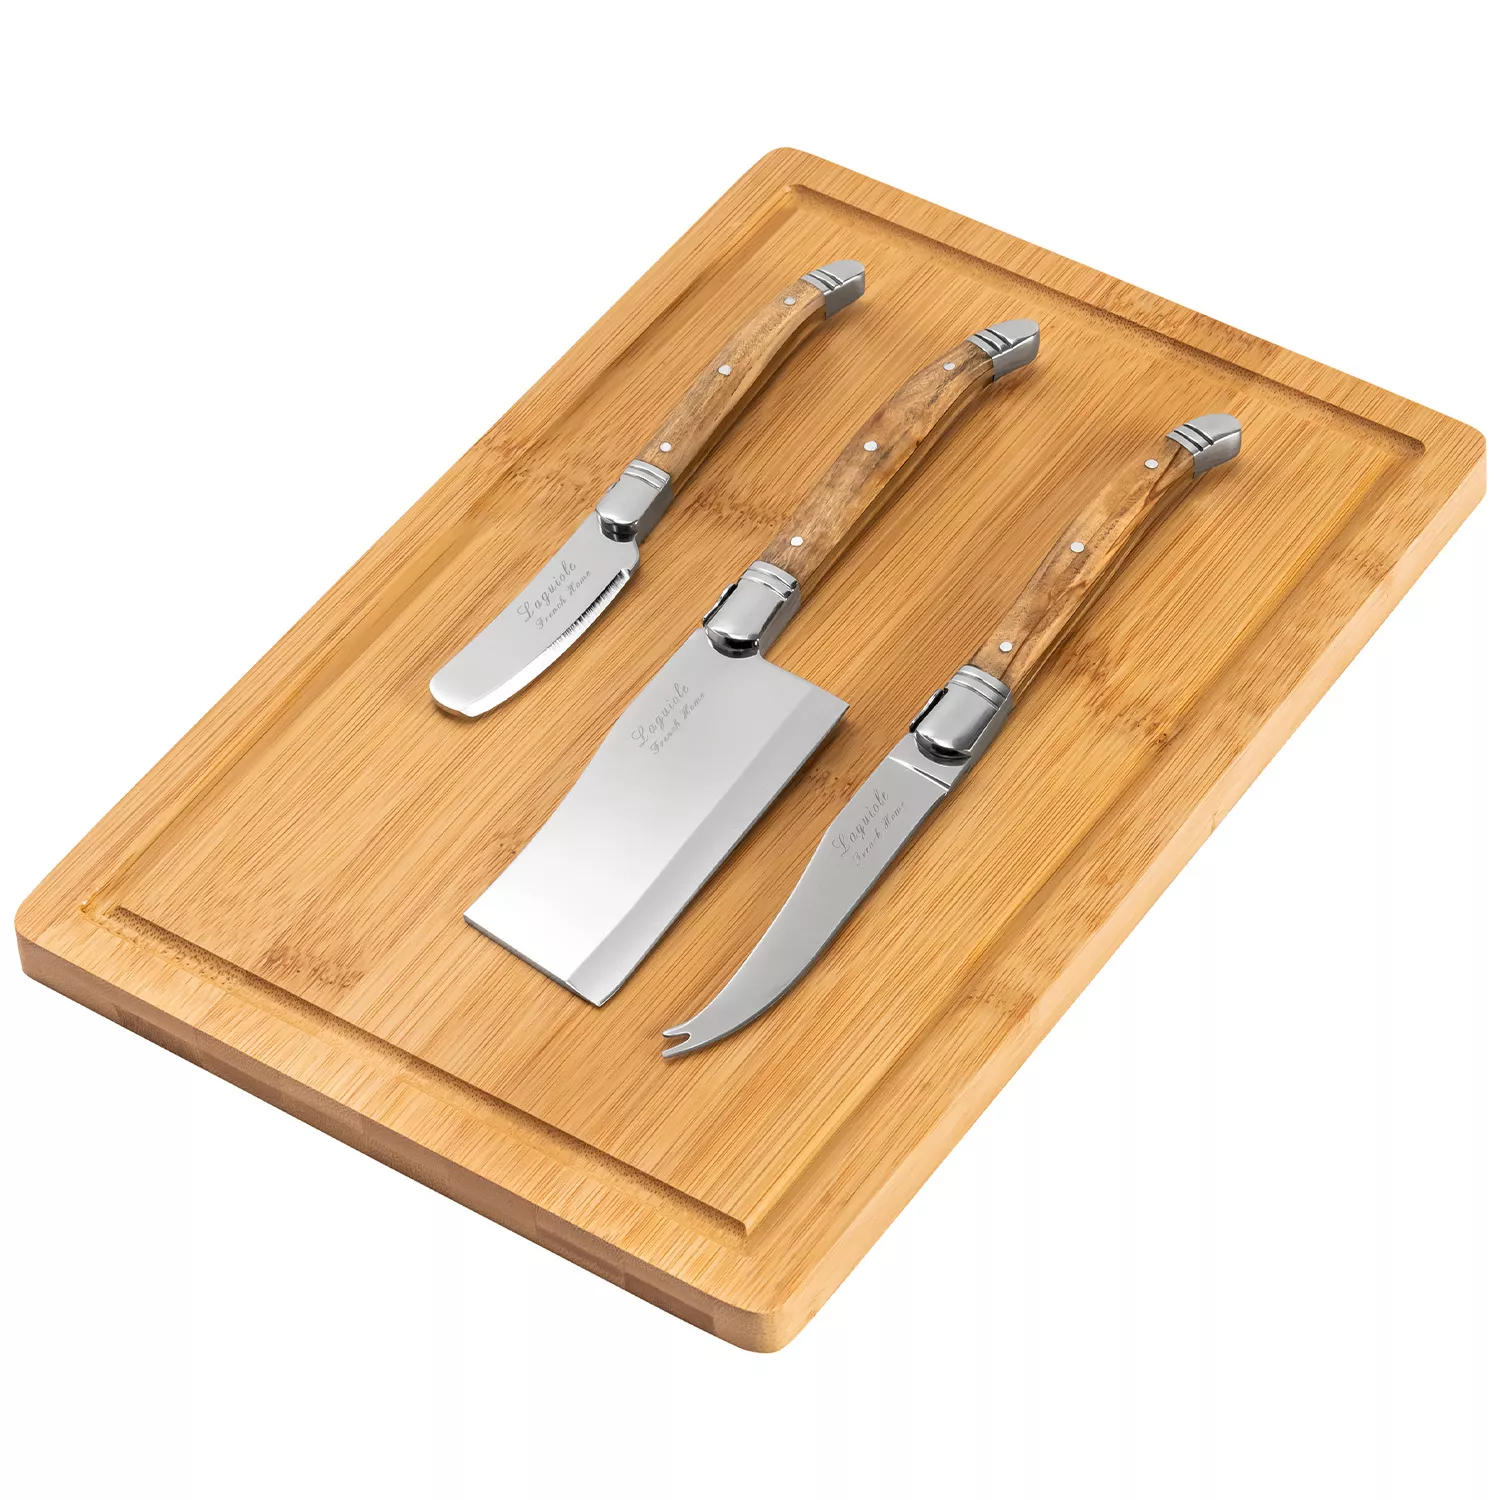 Olive Wood Knife / Spreader 7